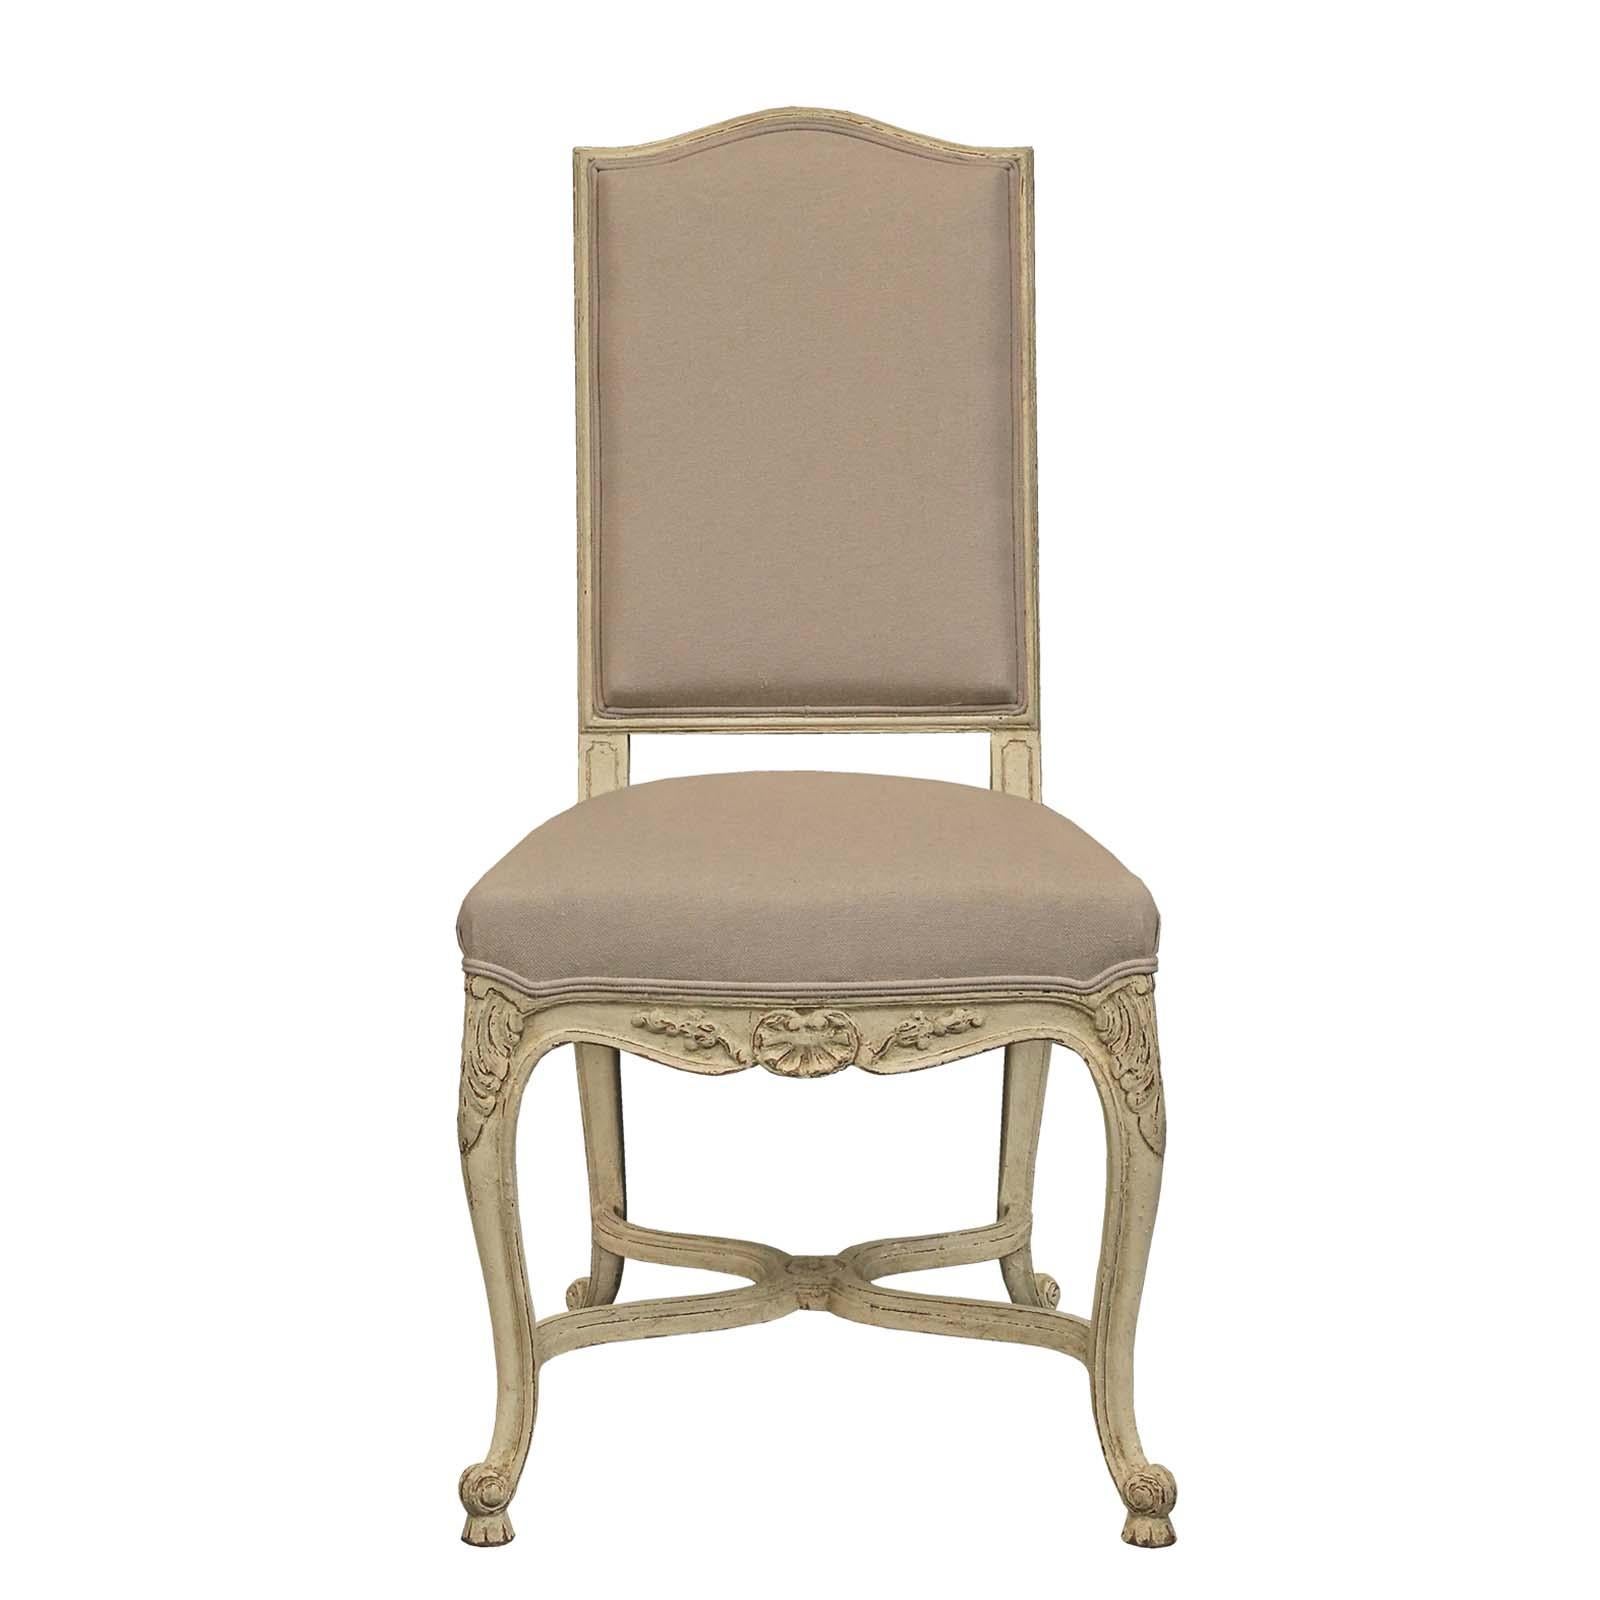 Un ensemble très attrayant de huit chaises de salle à manger françaises Louis XV st. patiné. Chaque chaise latérale repose sur des pieds cabriole avec une frise festonnée. De grandes feuilles d'acanthe sculptées ornent le haut des pieds avant,